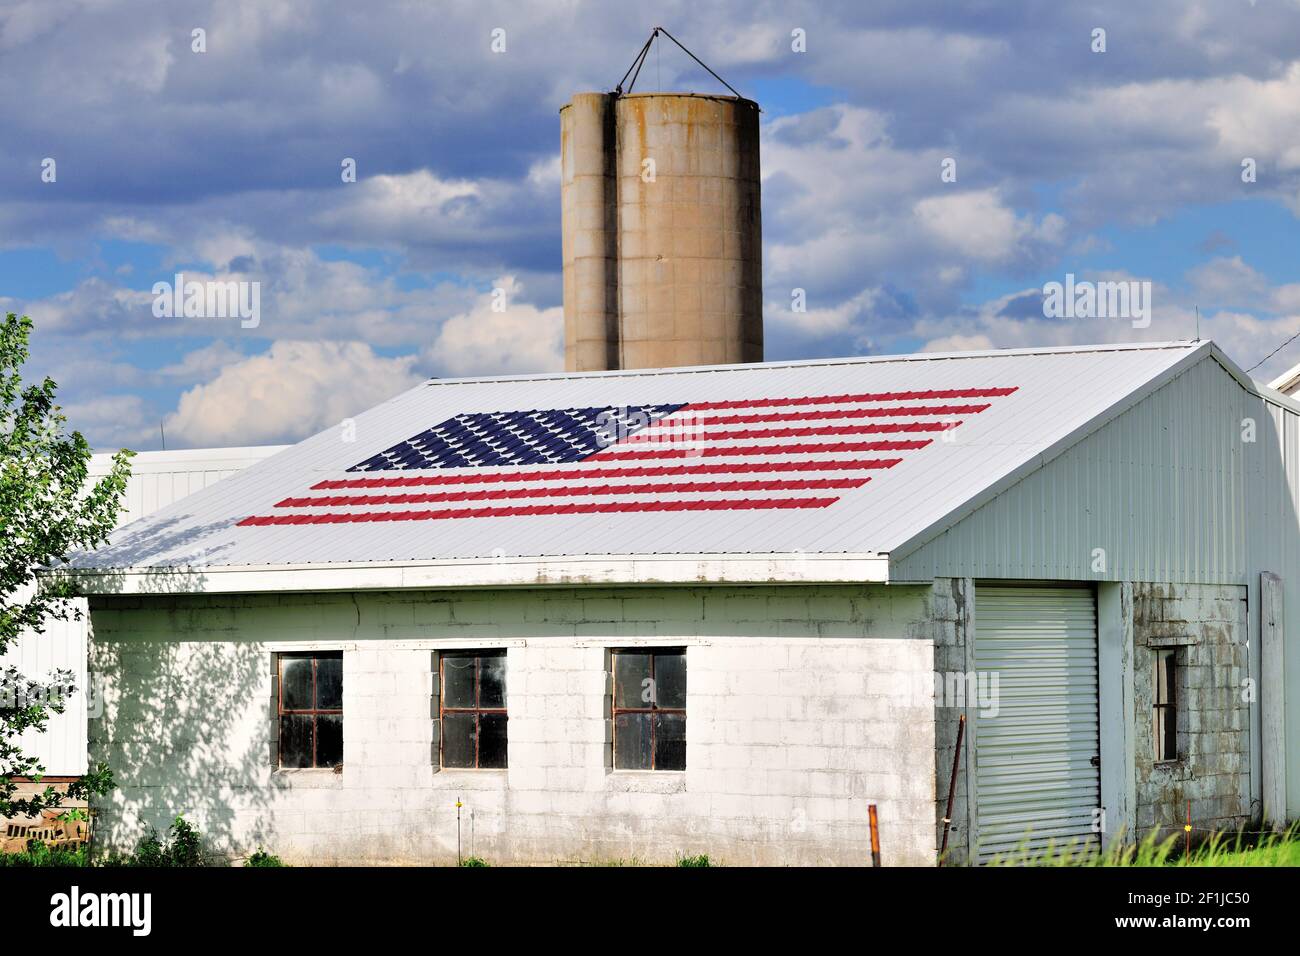 Burlington, Illinois, USA. Ein patriotischer Schuppen auf einem Bauernhof, der einen Einblick in konservative und traditionelle Werte gibt, die im Mittleren Westen der USA üblich sind. Stockfoto